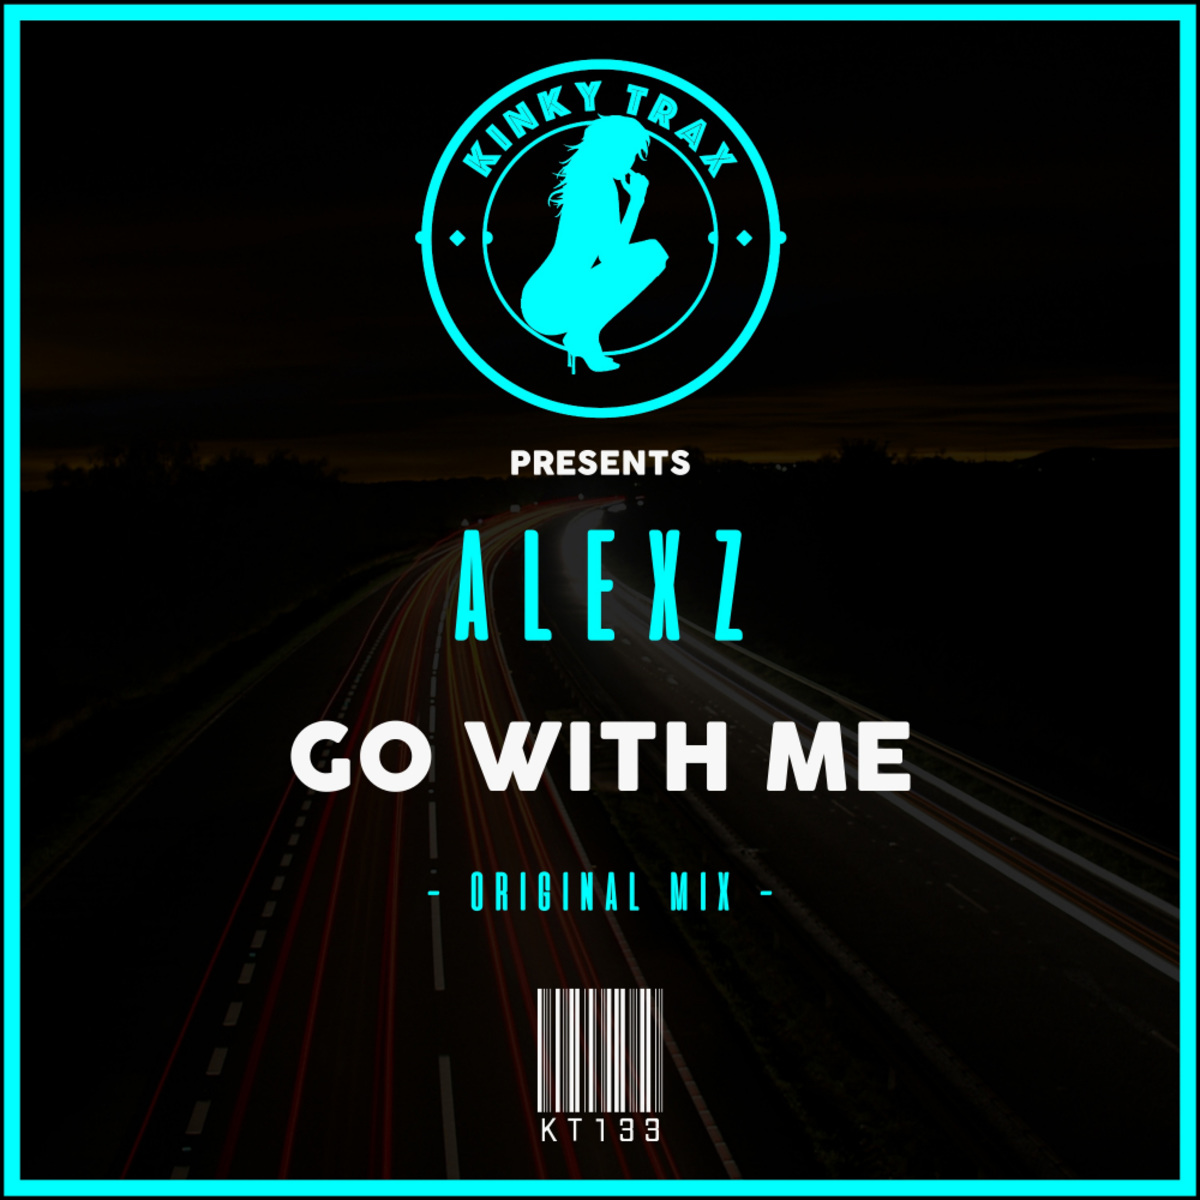 AlexZ - Go With Me / Kinky Trax